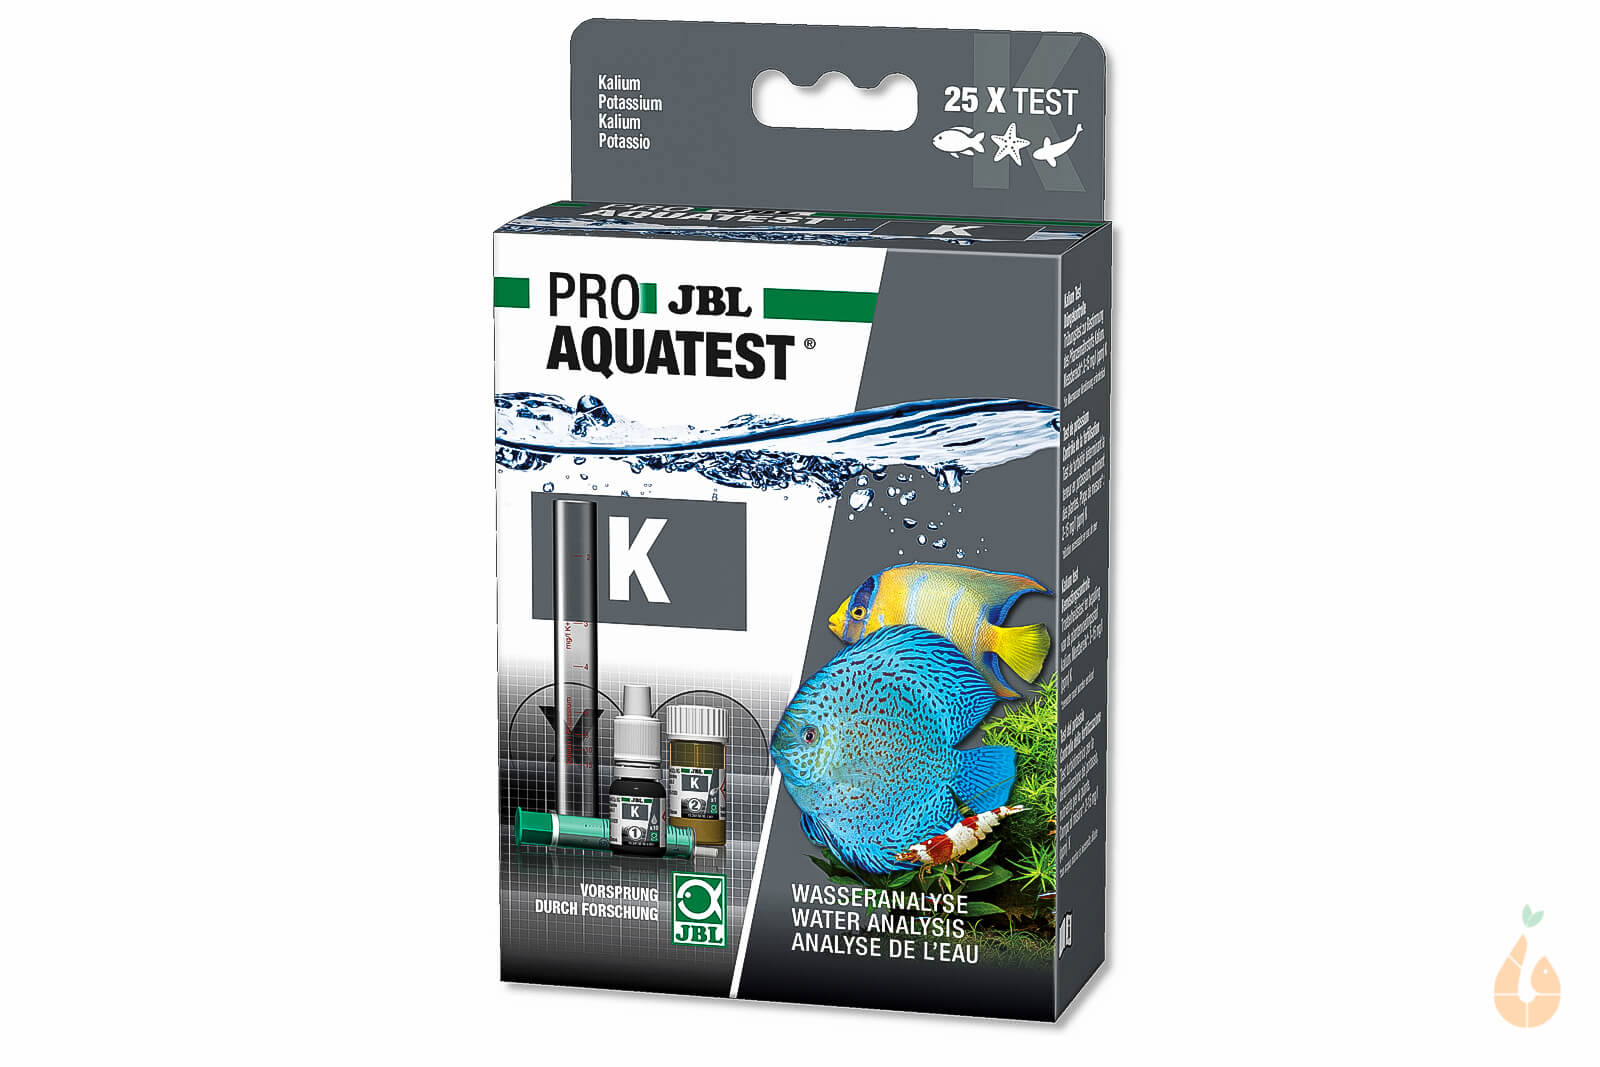 JBL PROAQUATEST K / Kalium Test | Aquarium